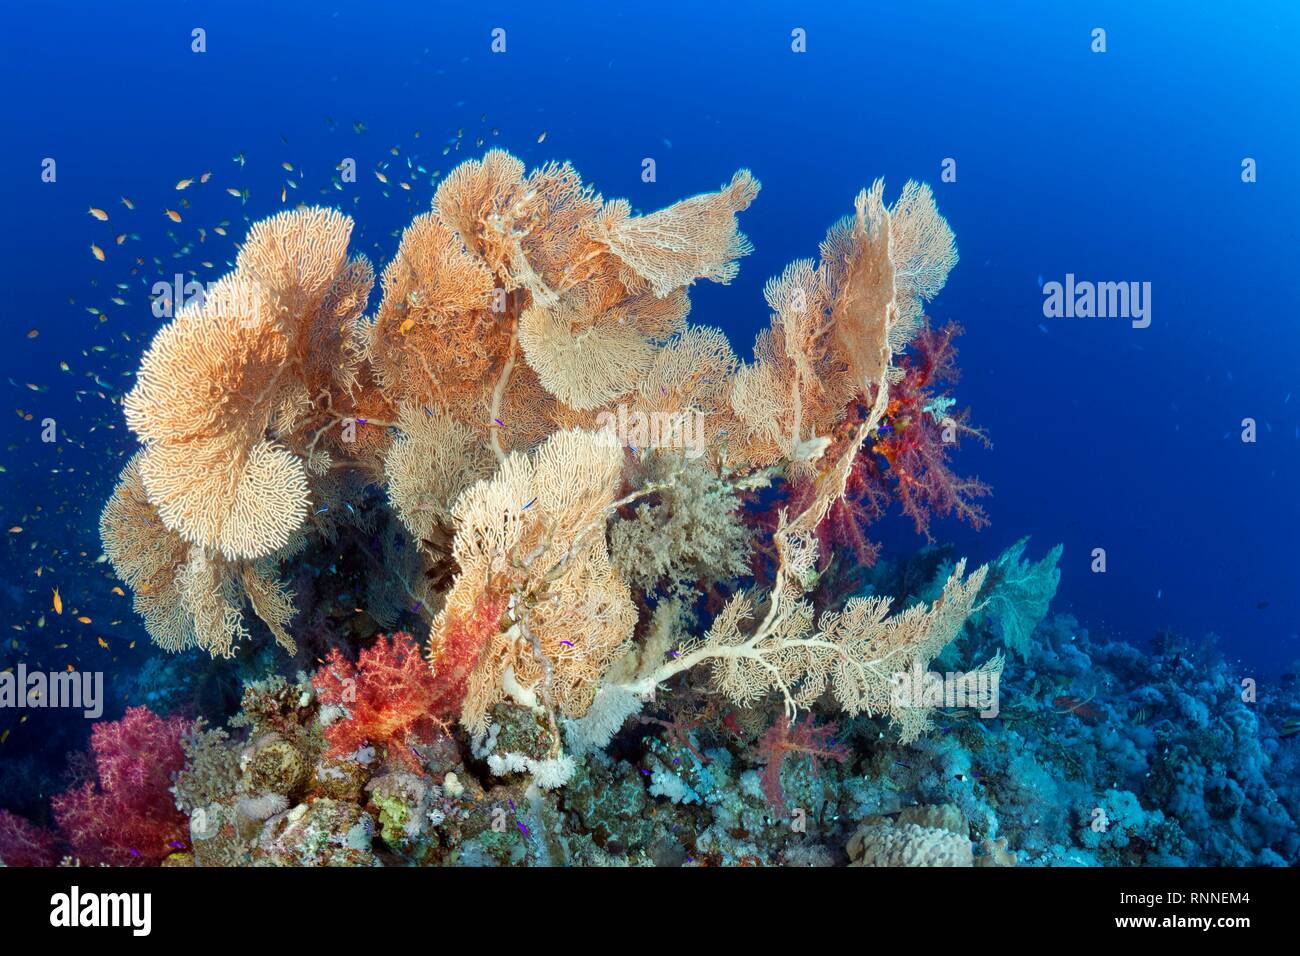 Comienzo con el grupo coral de gorgonias (Klunzinger Annella mollis) y corales blandos (Dendronephthya klunzingeri), Mar Rojo, Egipto Foto de stock